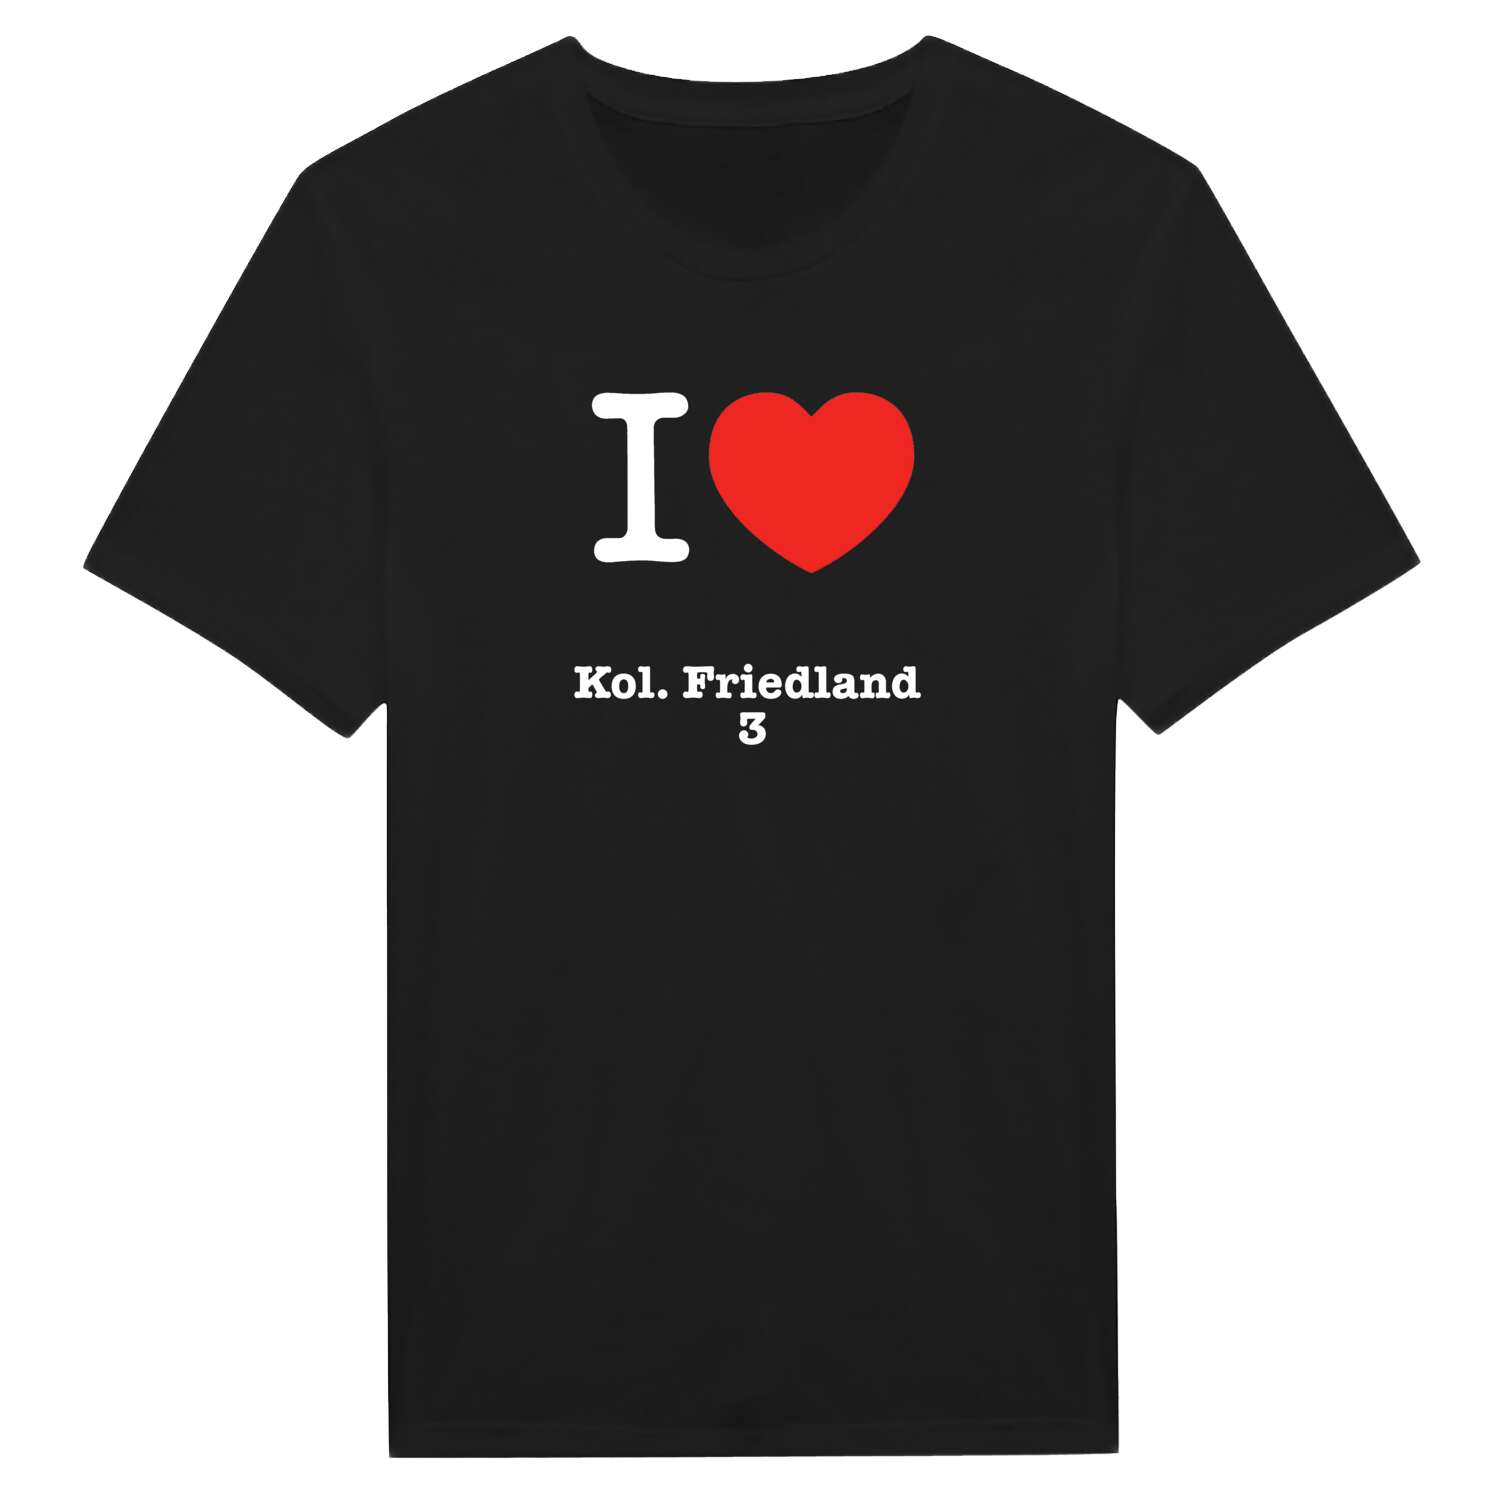 Kol. Friedland 3 T-Shirt »I love«